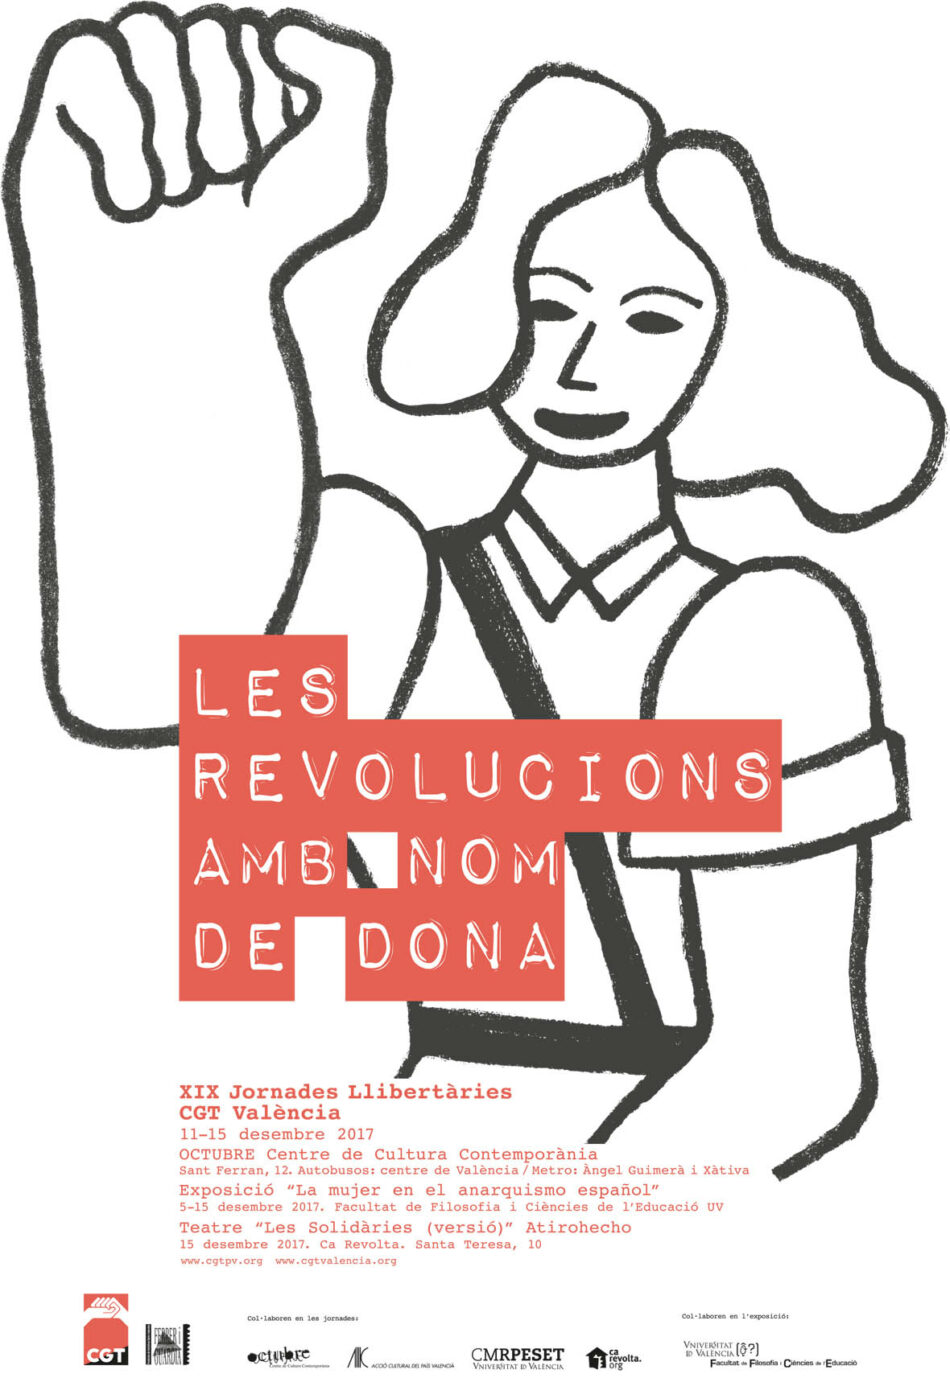 La CGT donarà la perspectiva de “Les revolucions amb nom de dona” en les XIX Jornades Llibertàries a València